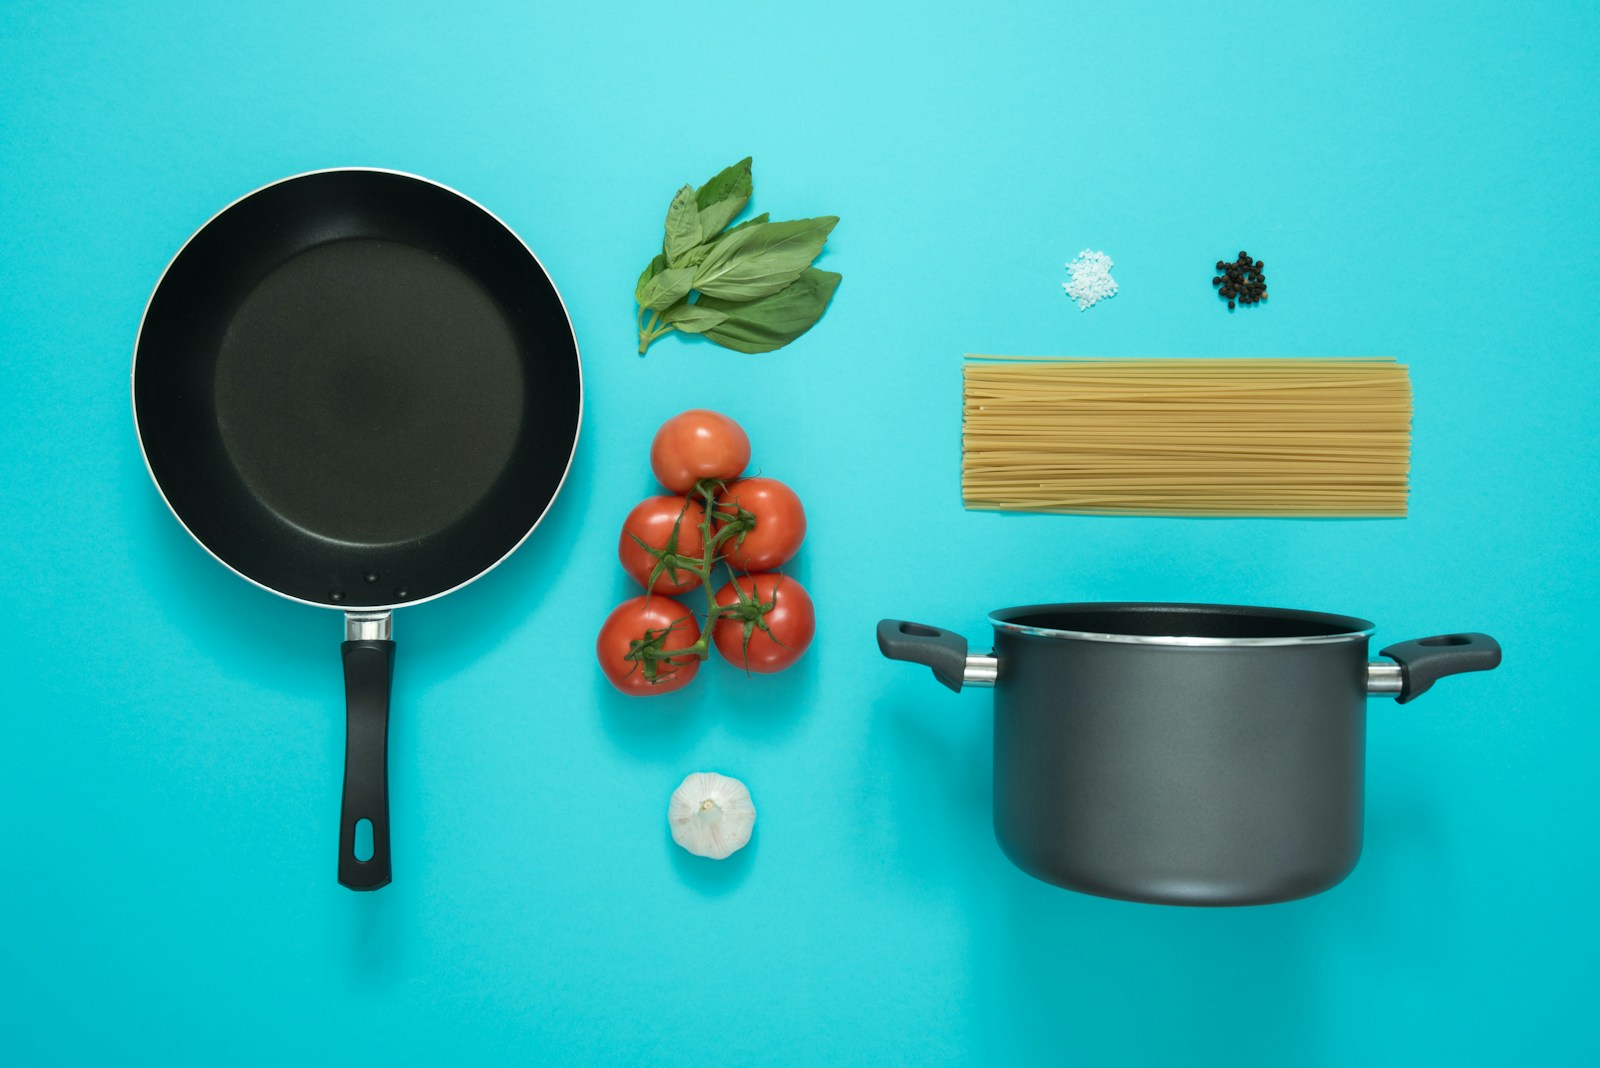 choisir une casserole sans pfas : tout savoir pour une cuisine saine